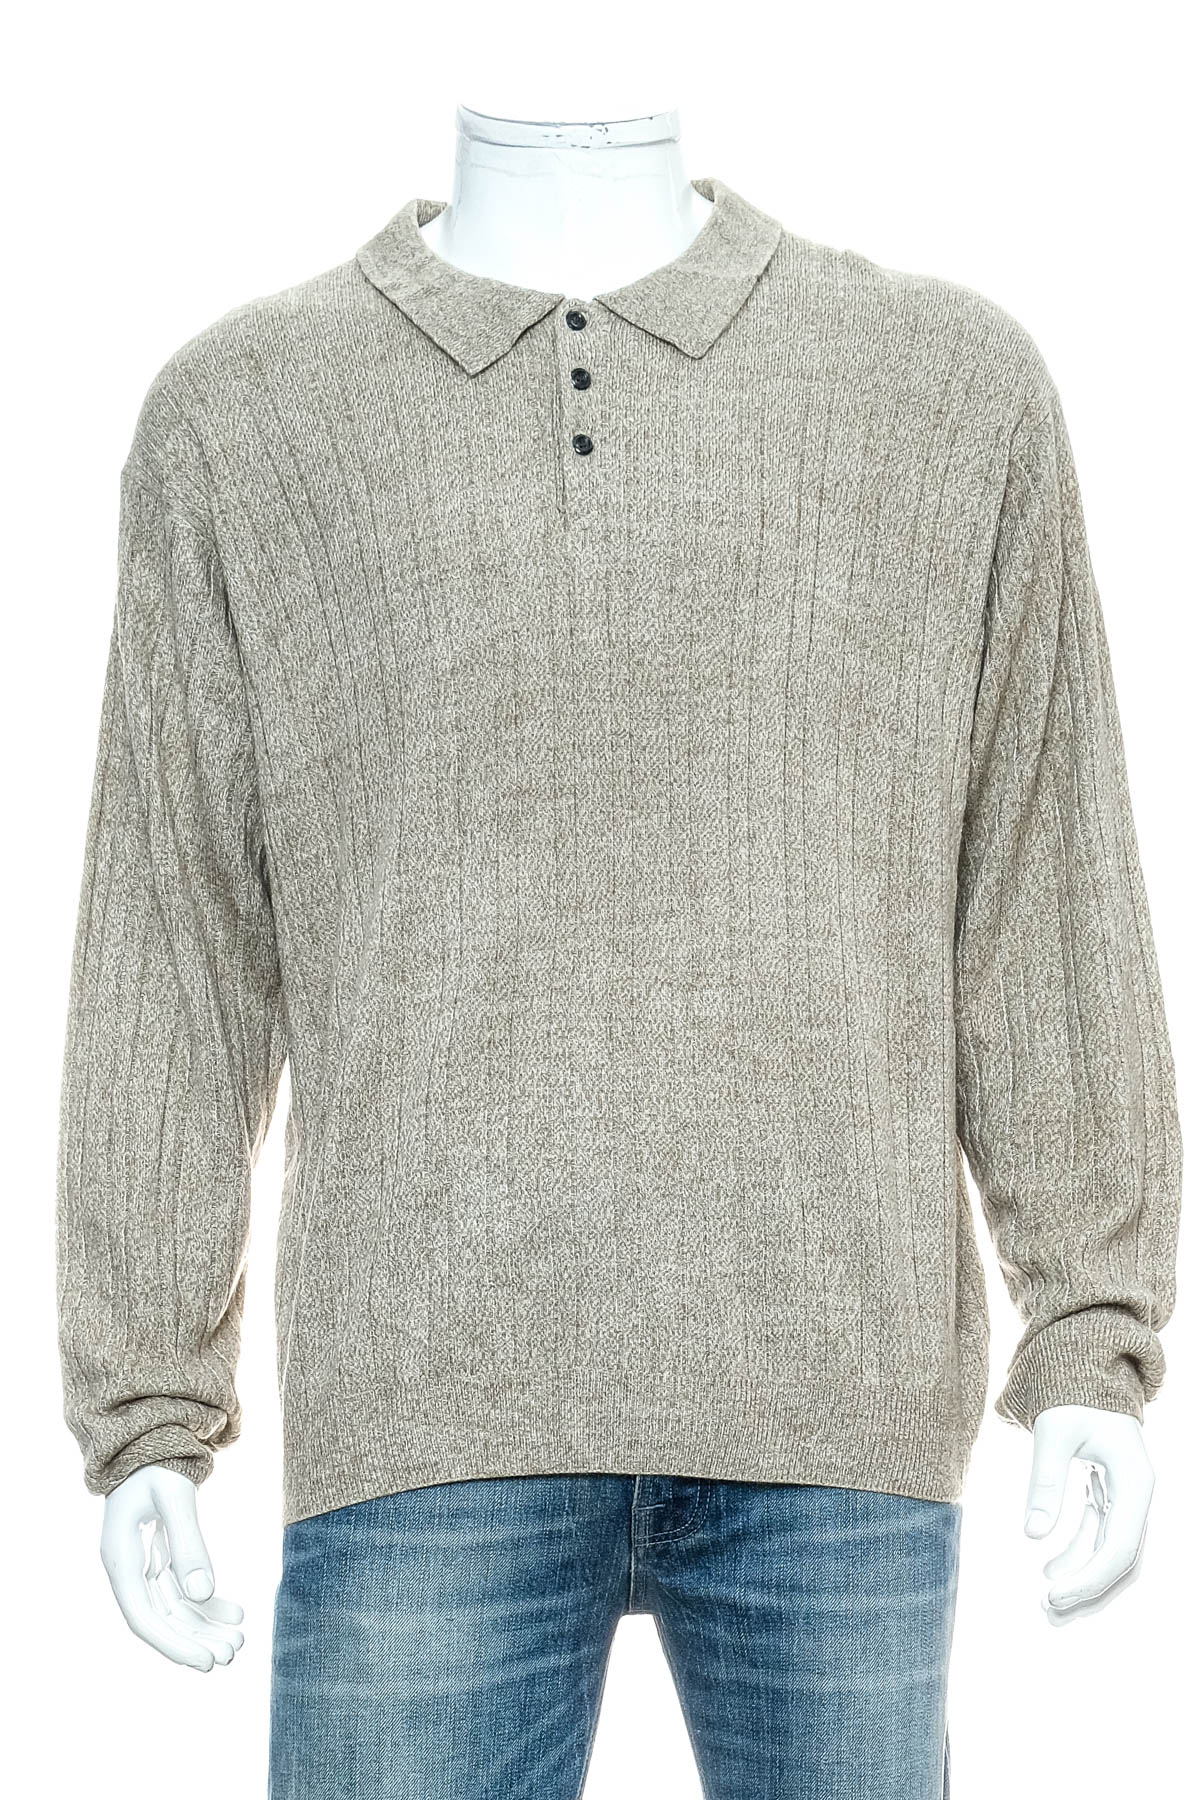 Men's sweater - GEOFFREY BEENE - 0